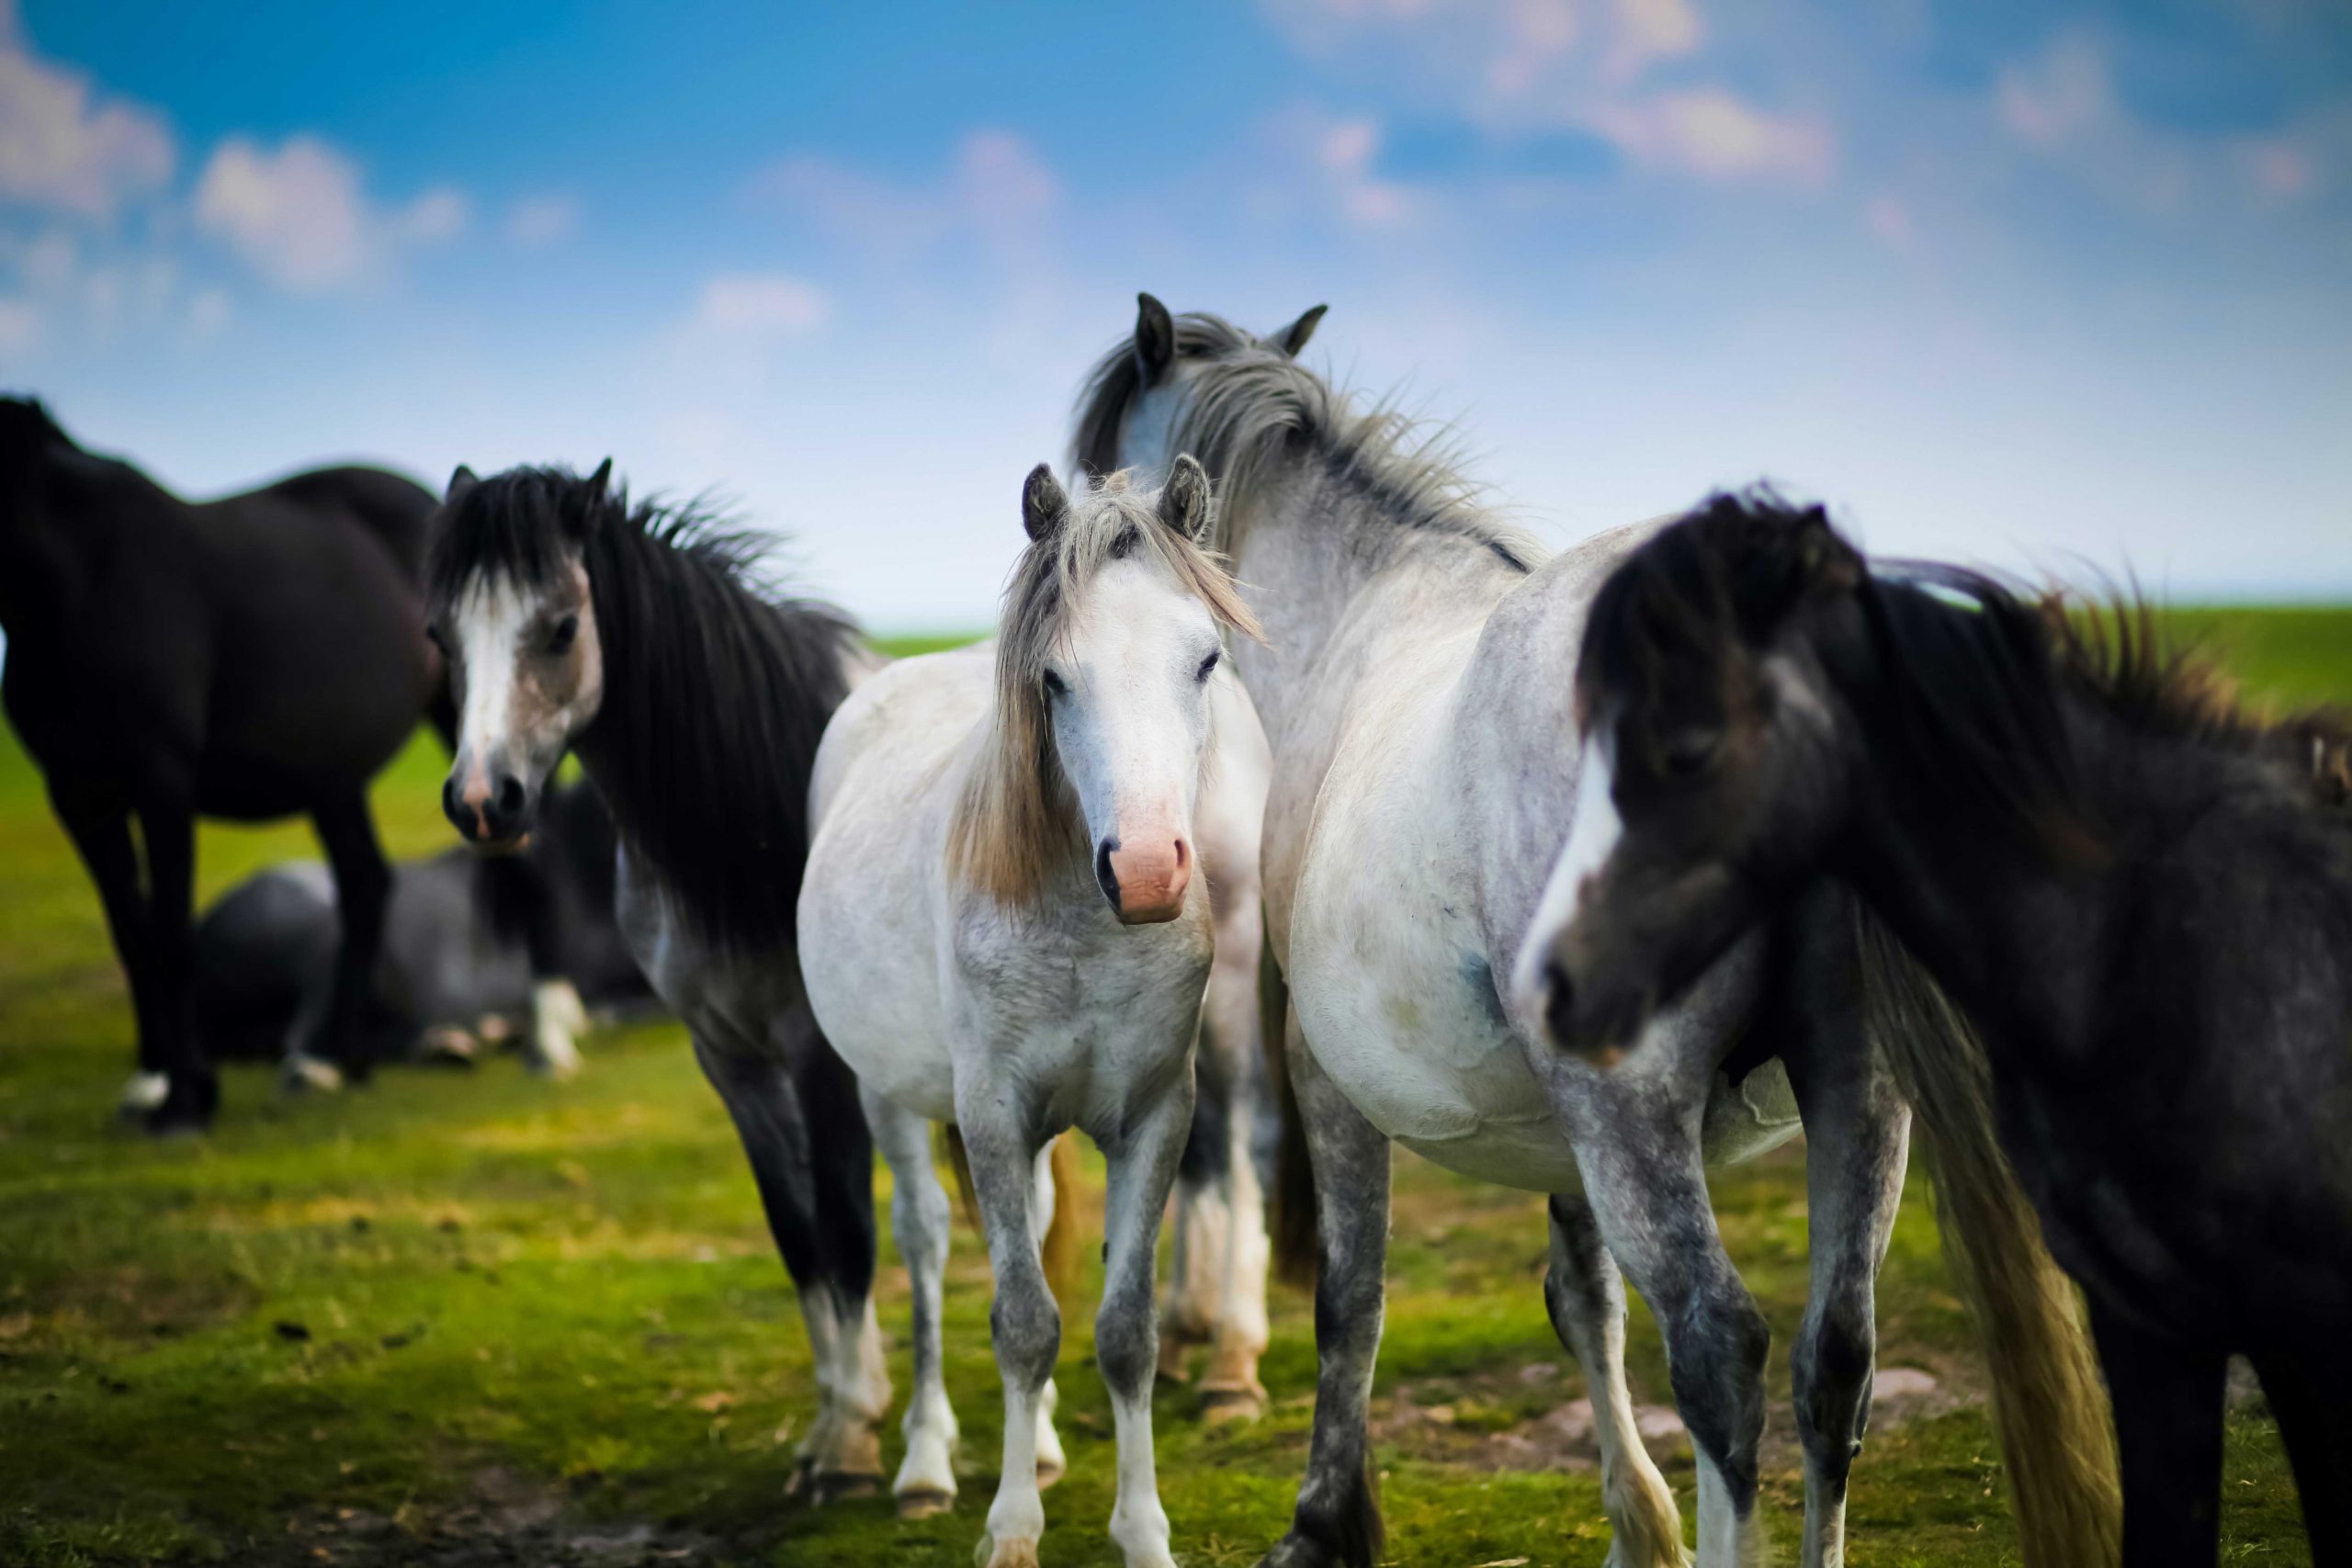 Welsh Ponies by Sammy Leigh Scholl on Unsplash